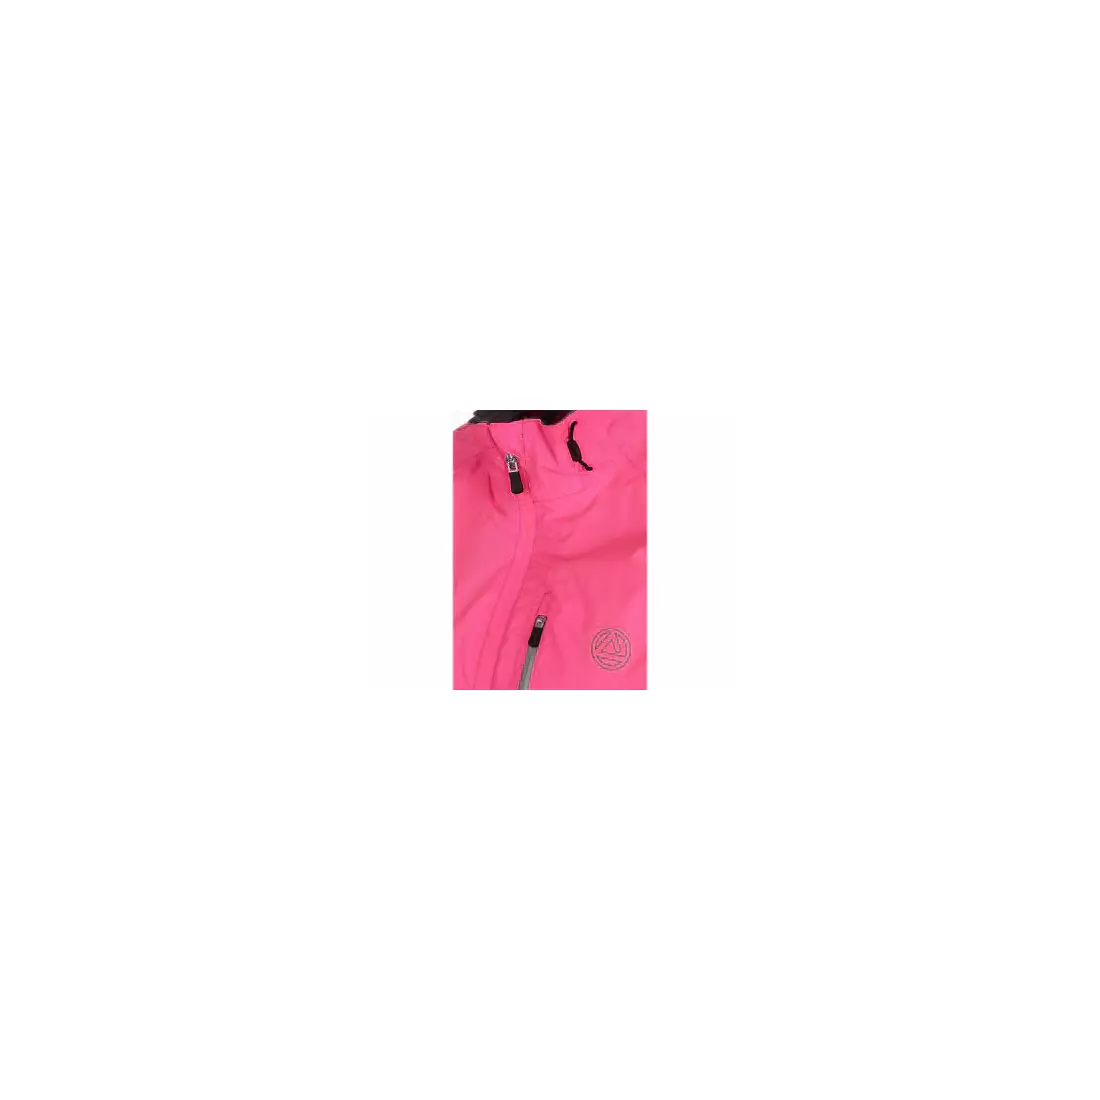 Jachetă de ploaie pentru ciclism DARE2B Transpose DWW095-7ZP, culoare: roz